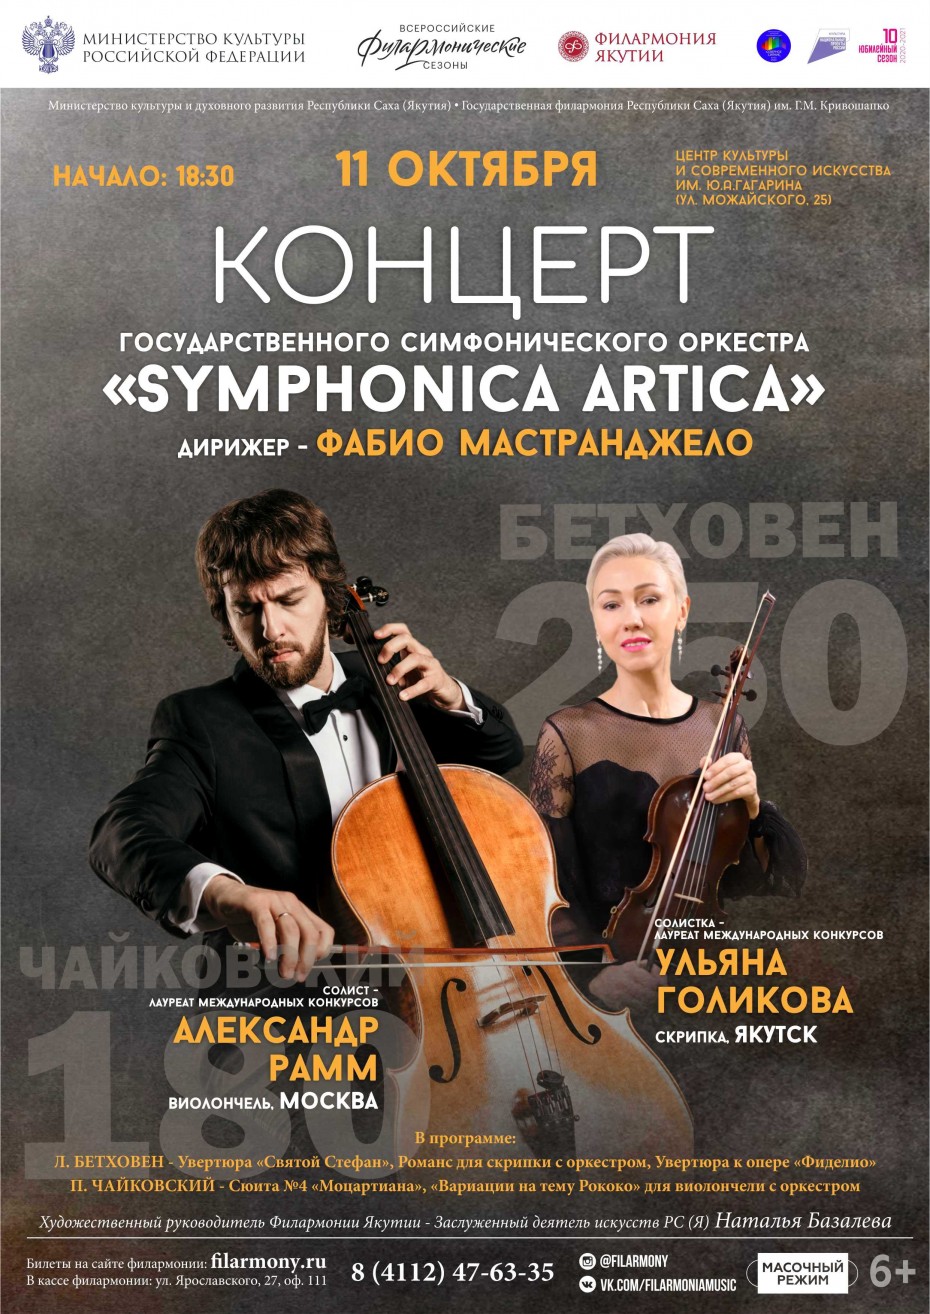 Государственный симфонический оркестр Symphonica ARTica приглашает на концерт